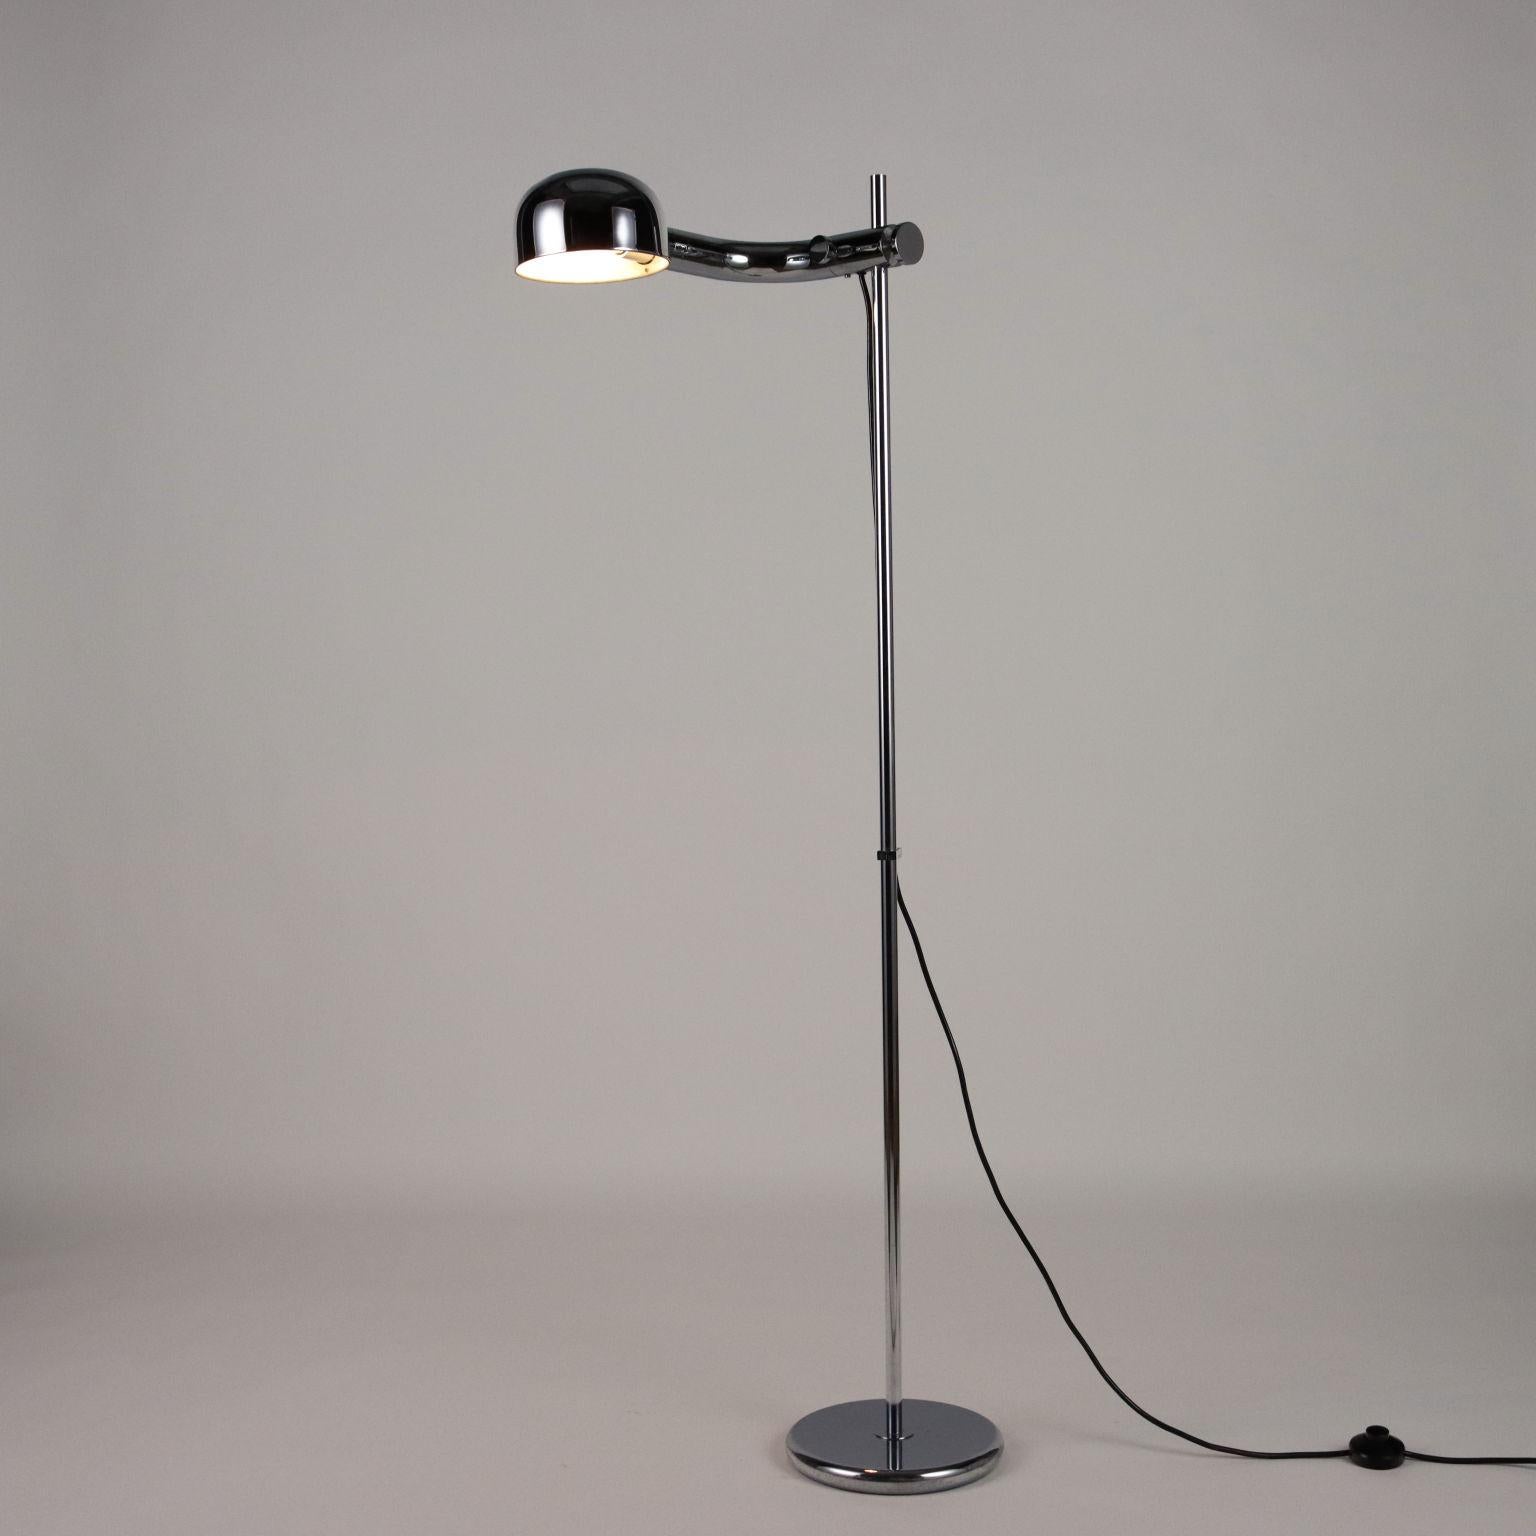 Mid-Century Modern Vintage Floor Lamp 60s-70s Chromed Metal Lighting For Sale